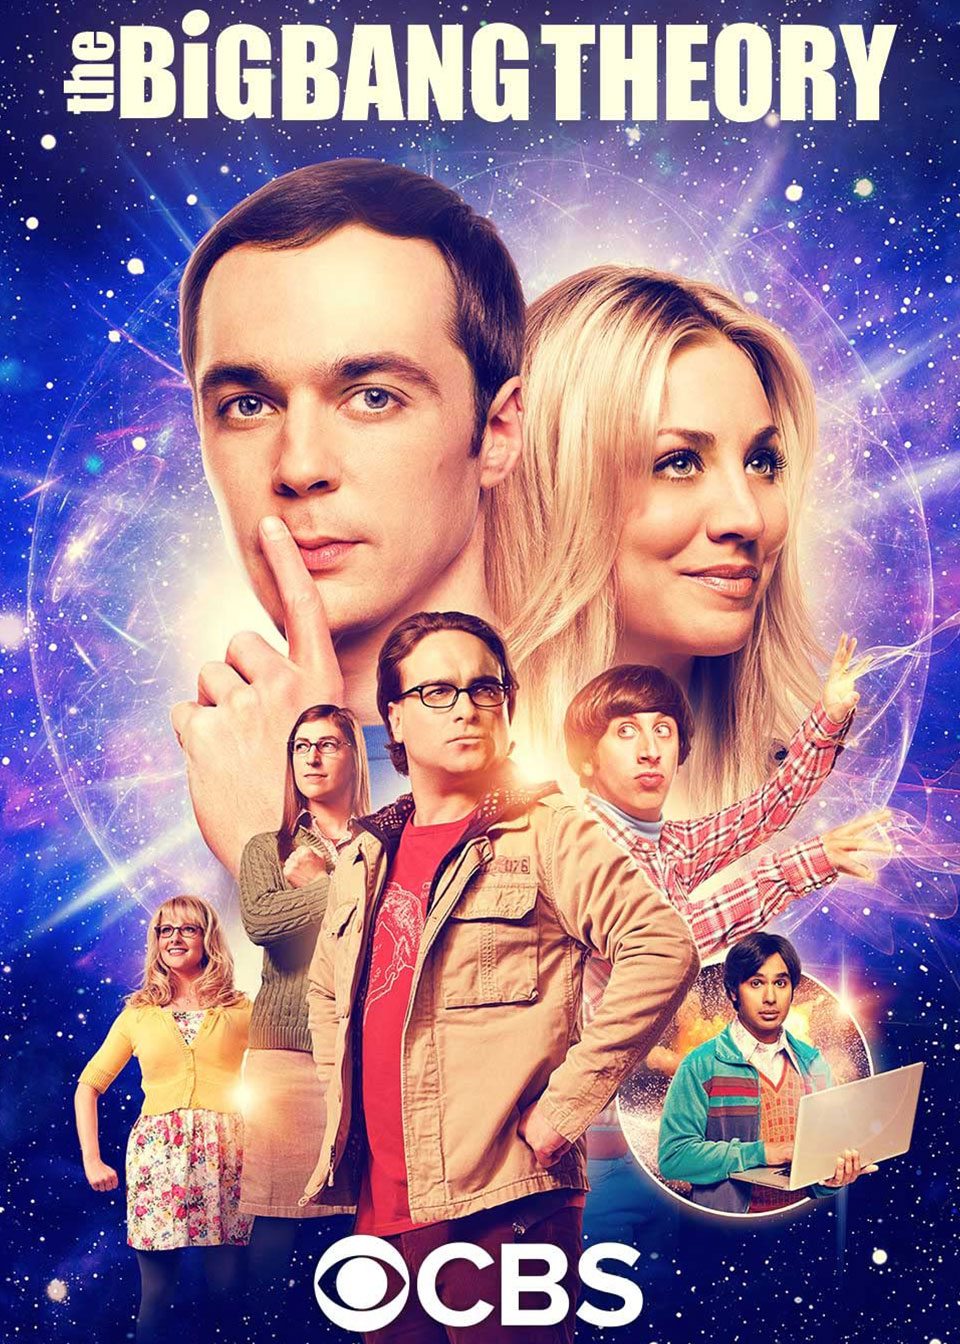 The Big Bang Theory Season 1